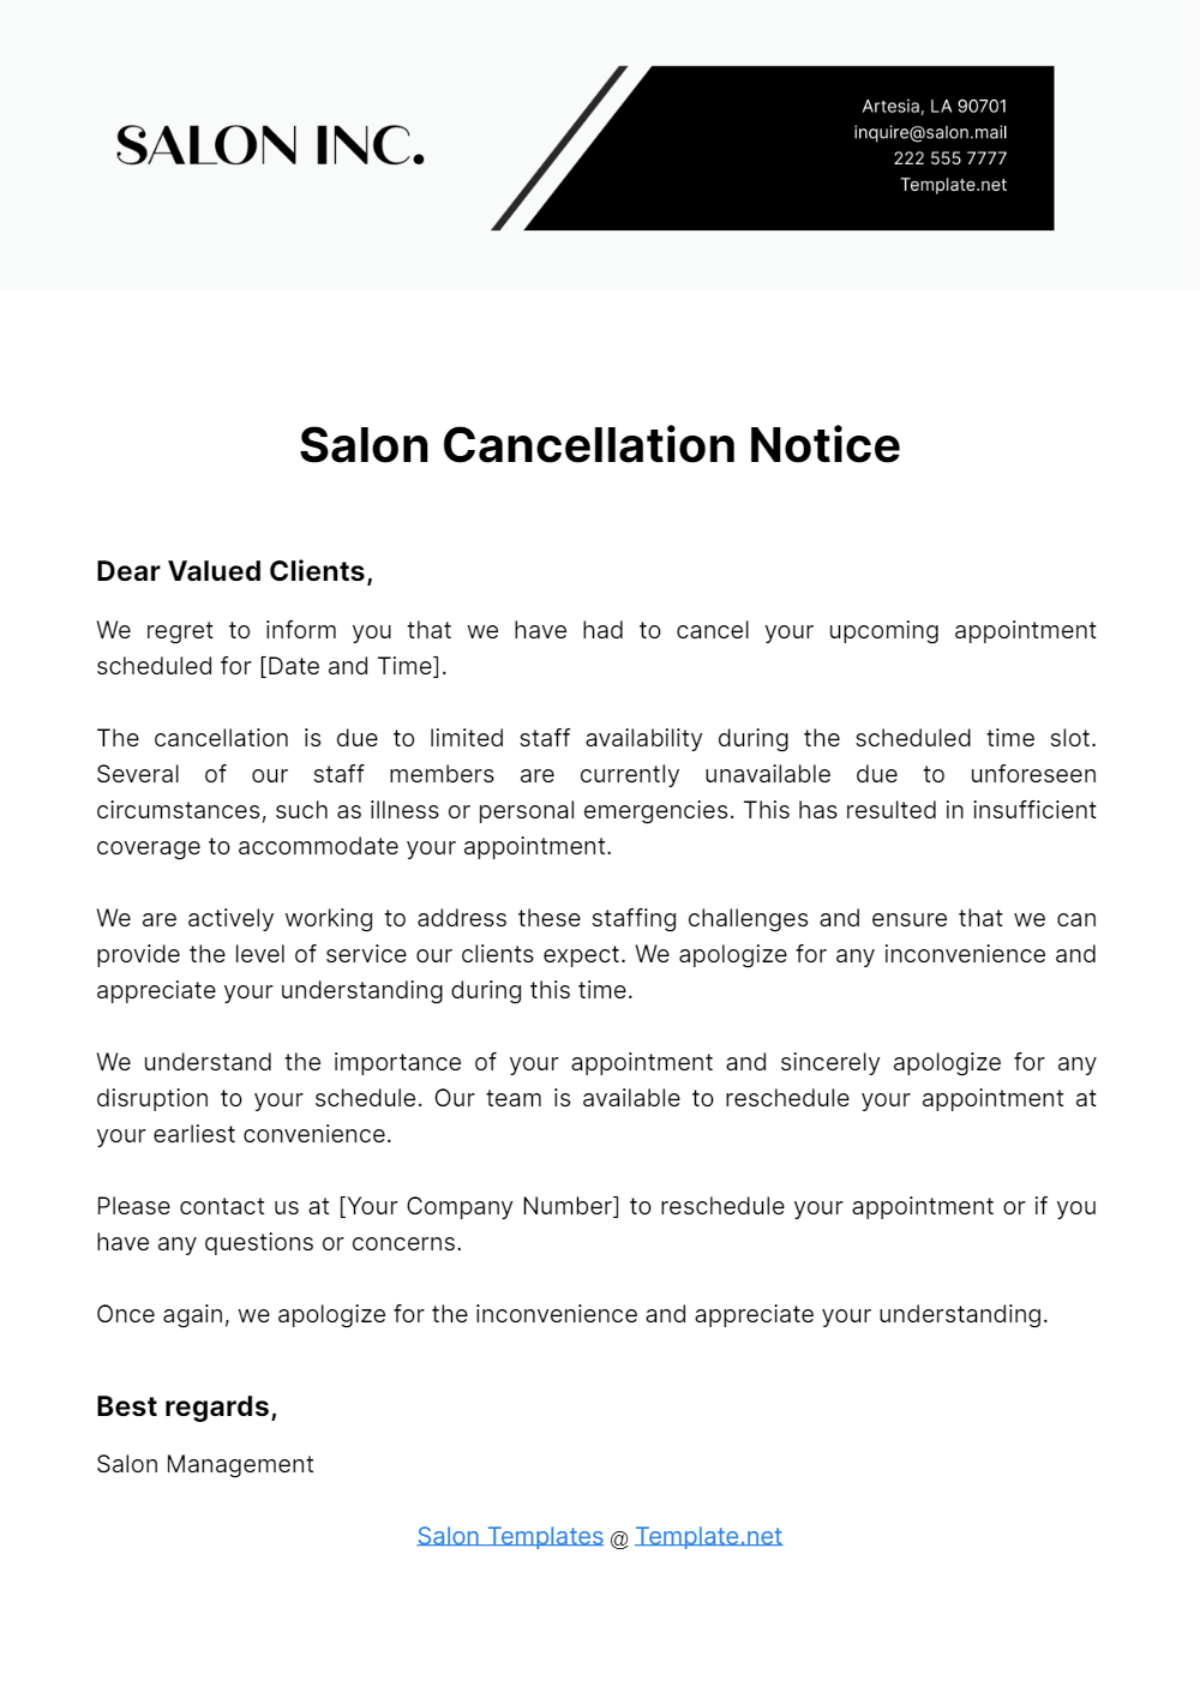 Salon Cancellation Notice Template